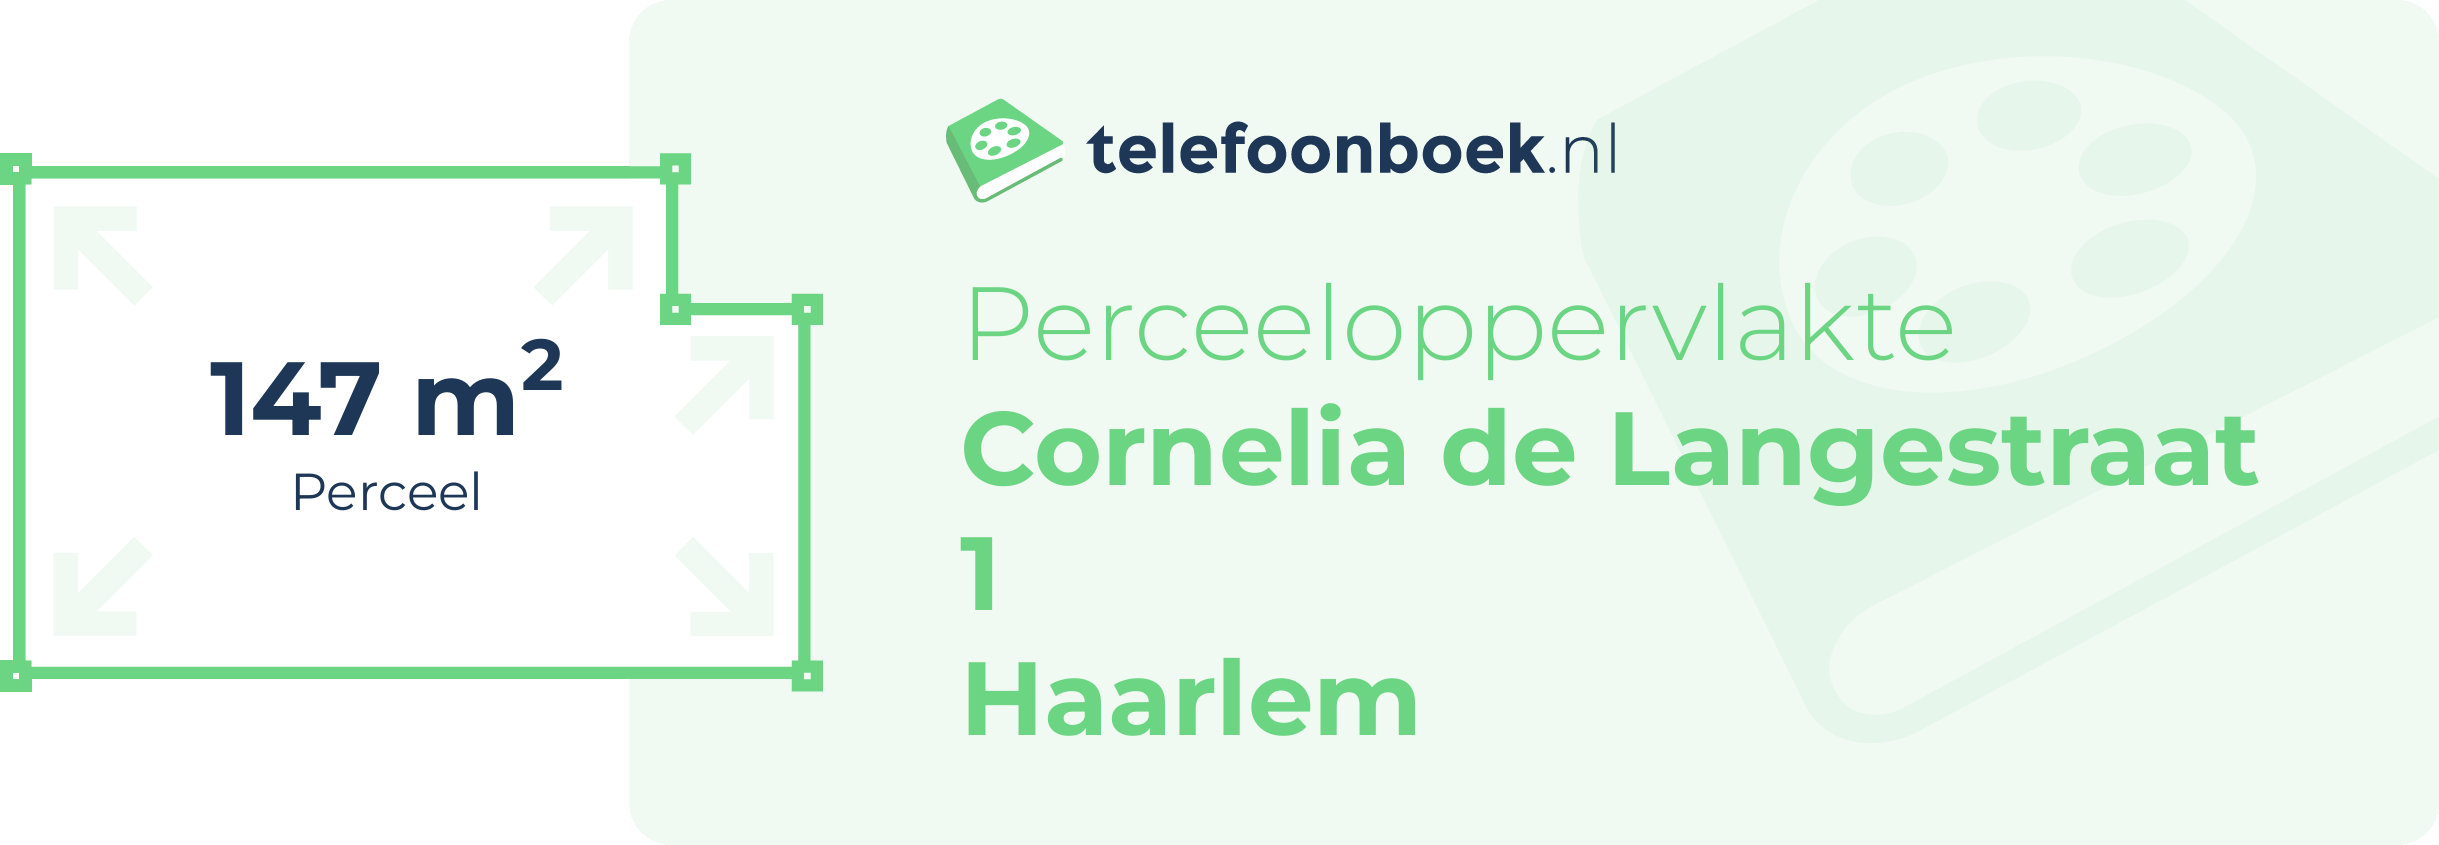 Perceeloppervlakte Cornelia De Langestraat 1 Haarlem